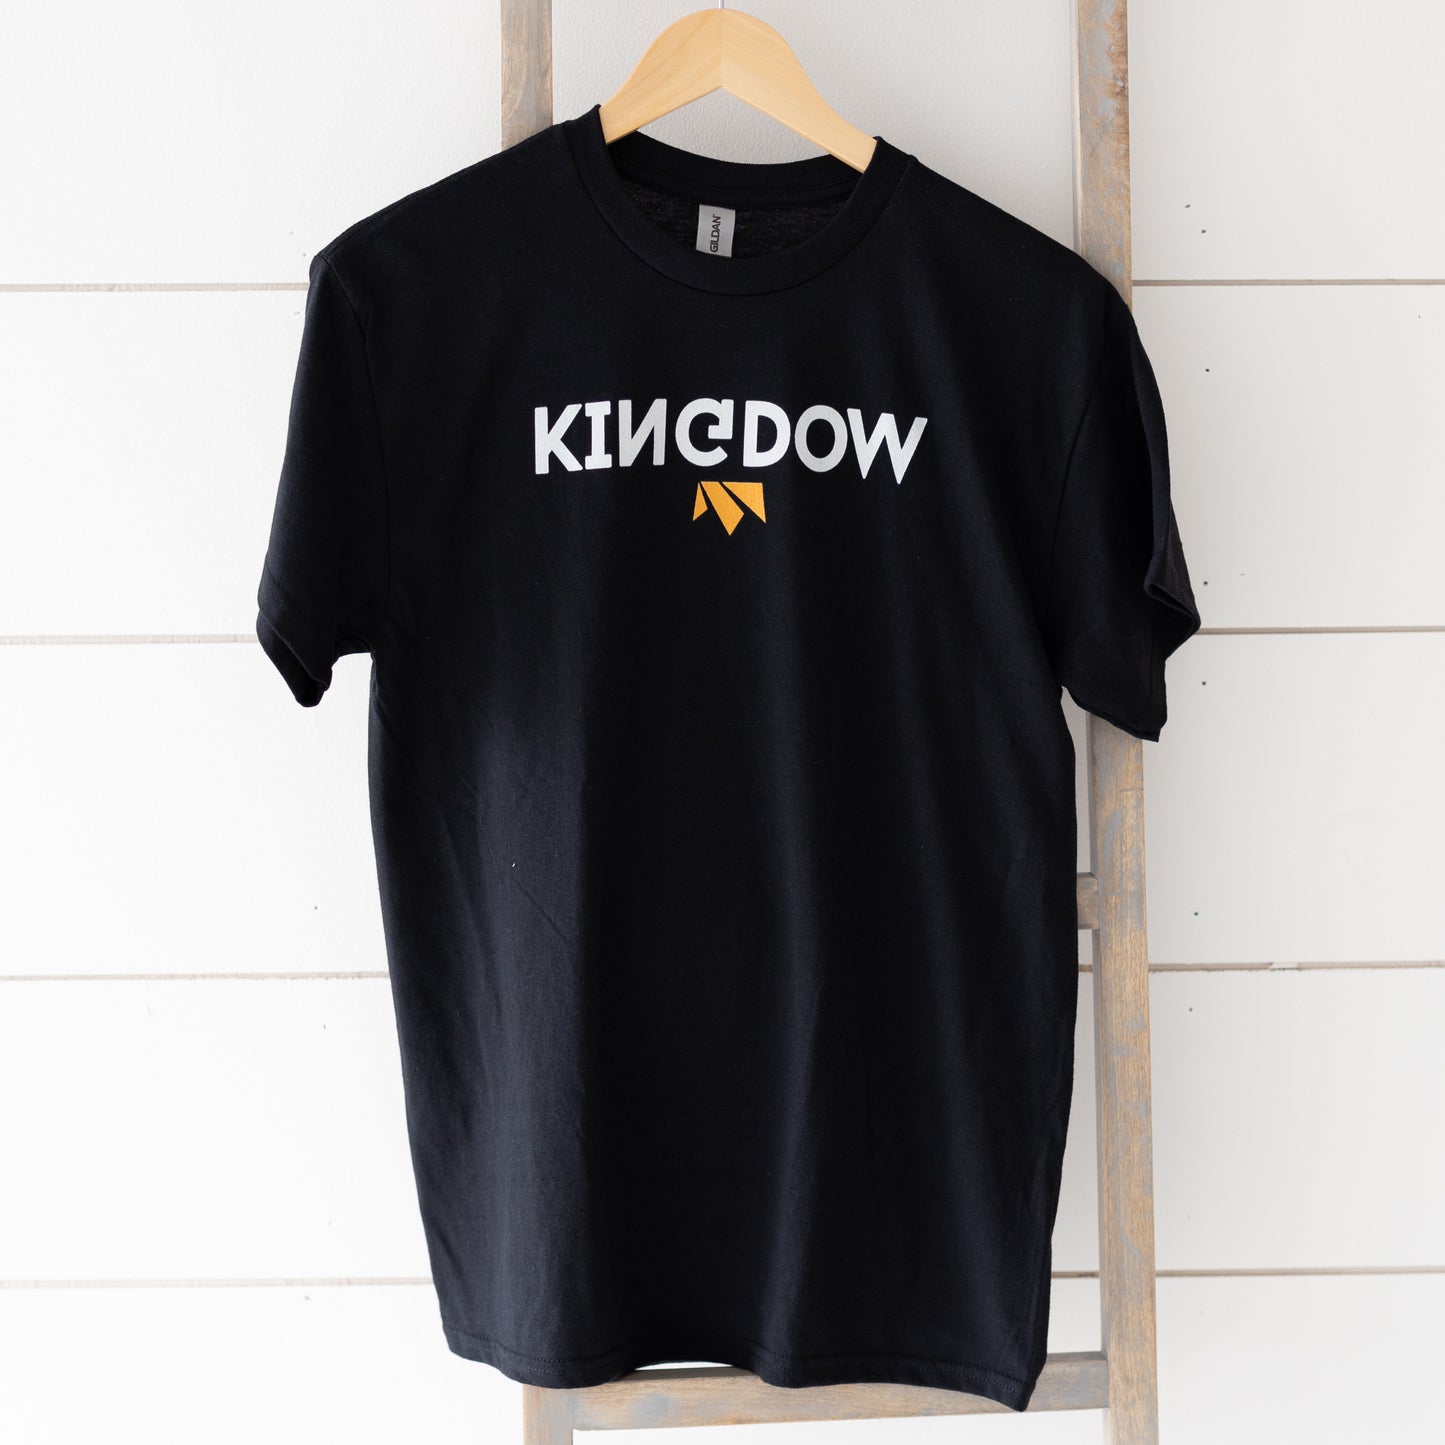 Upside-Down Kingdom Shirt